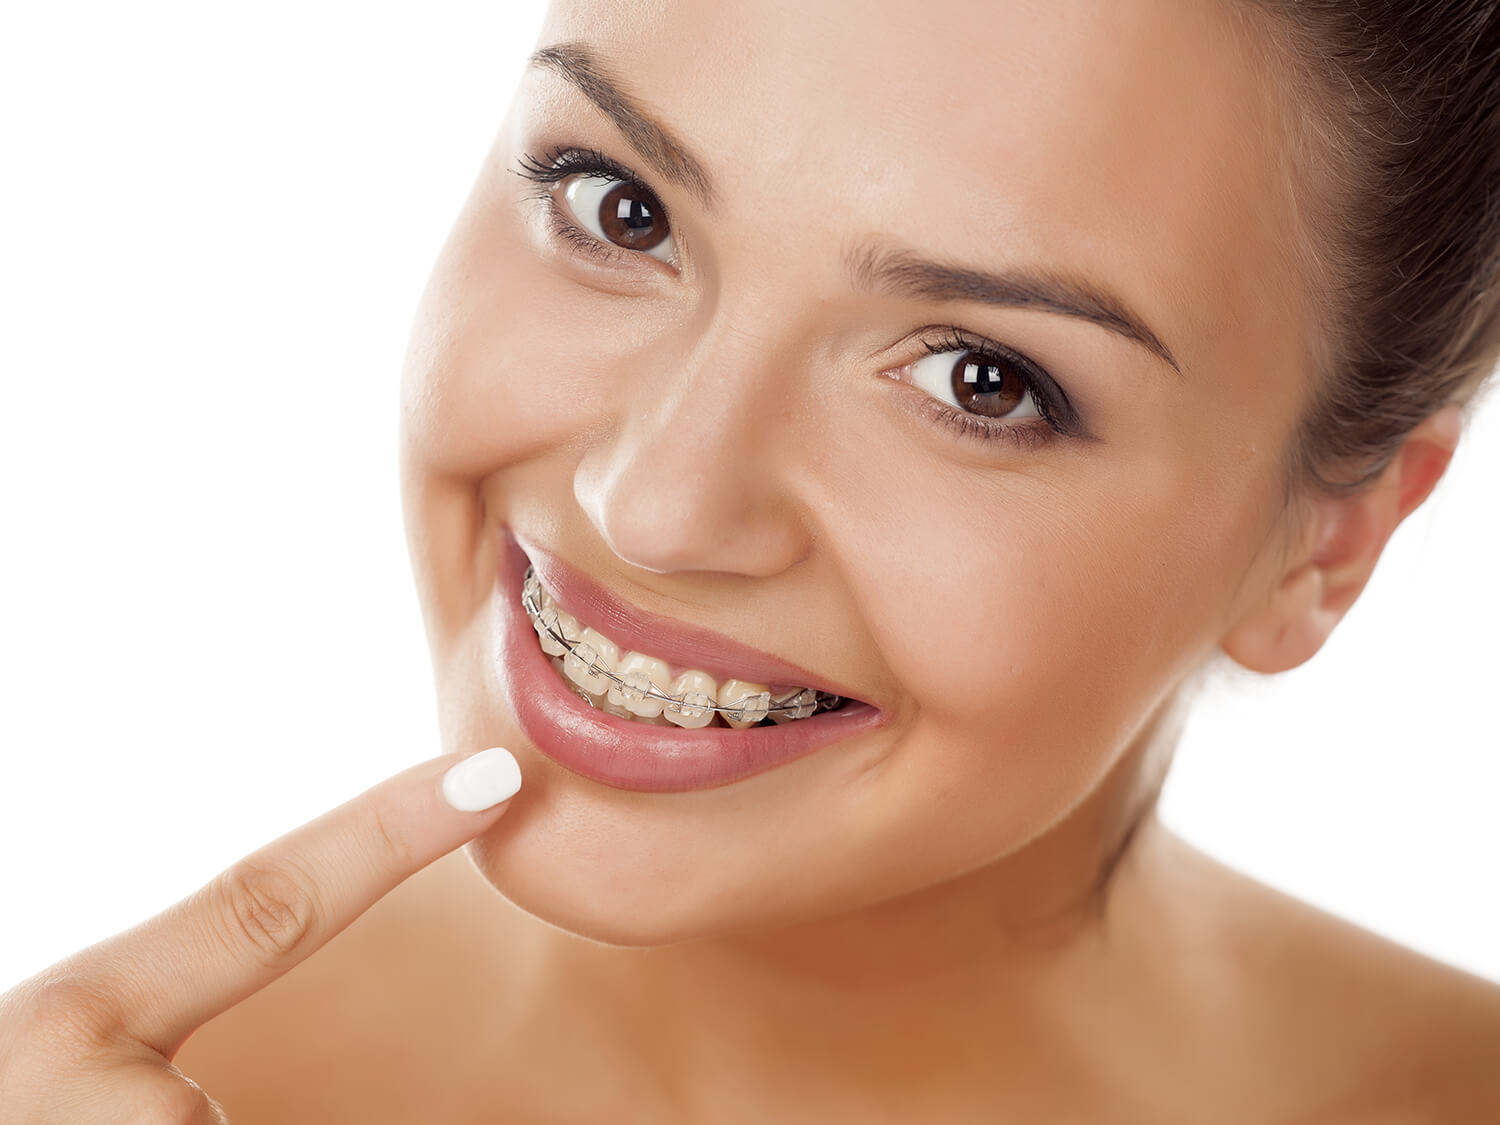 ventajas que aporta la ortodoncia a nuestra vida